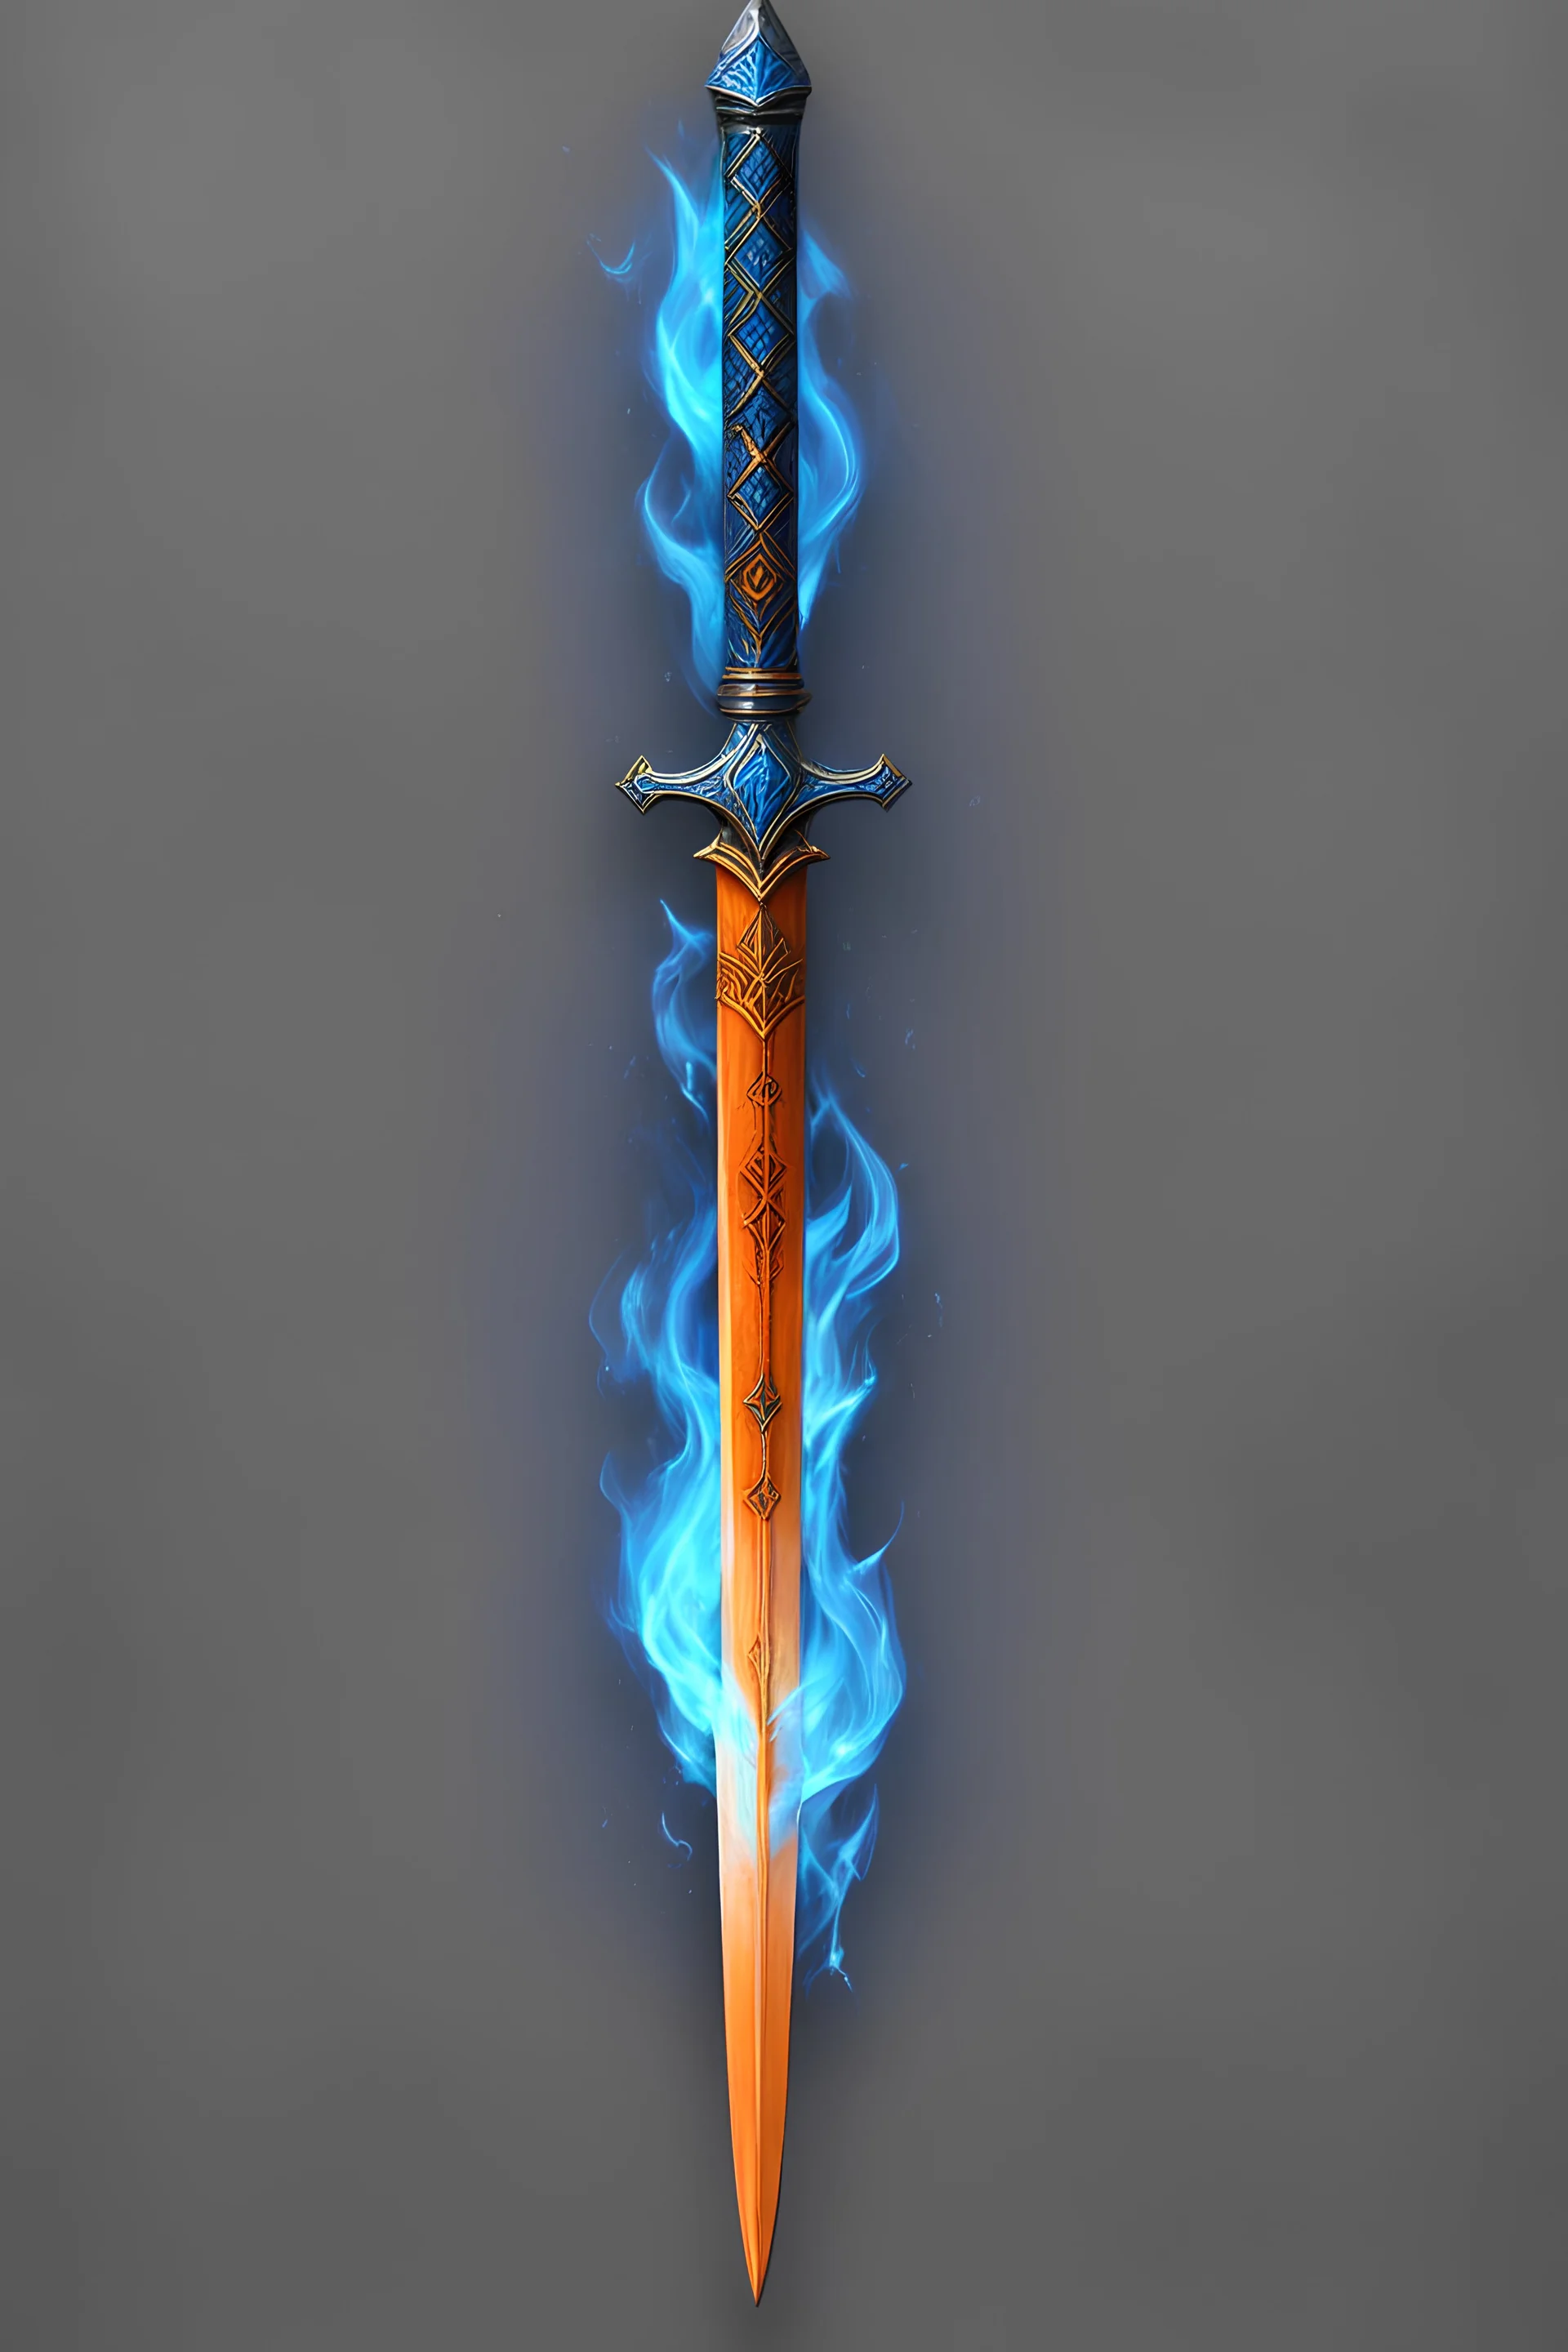 Orange Long Sword, Blue Fire runes